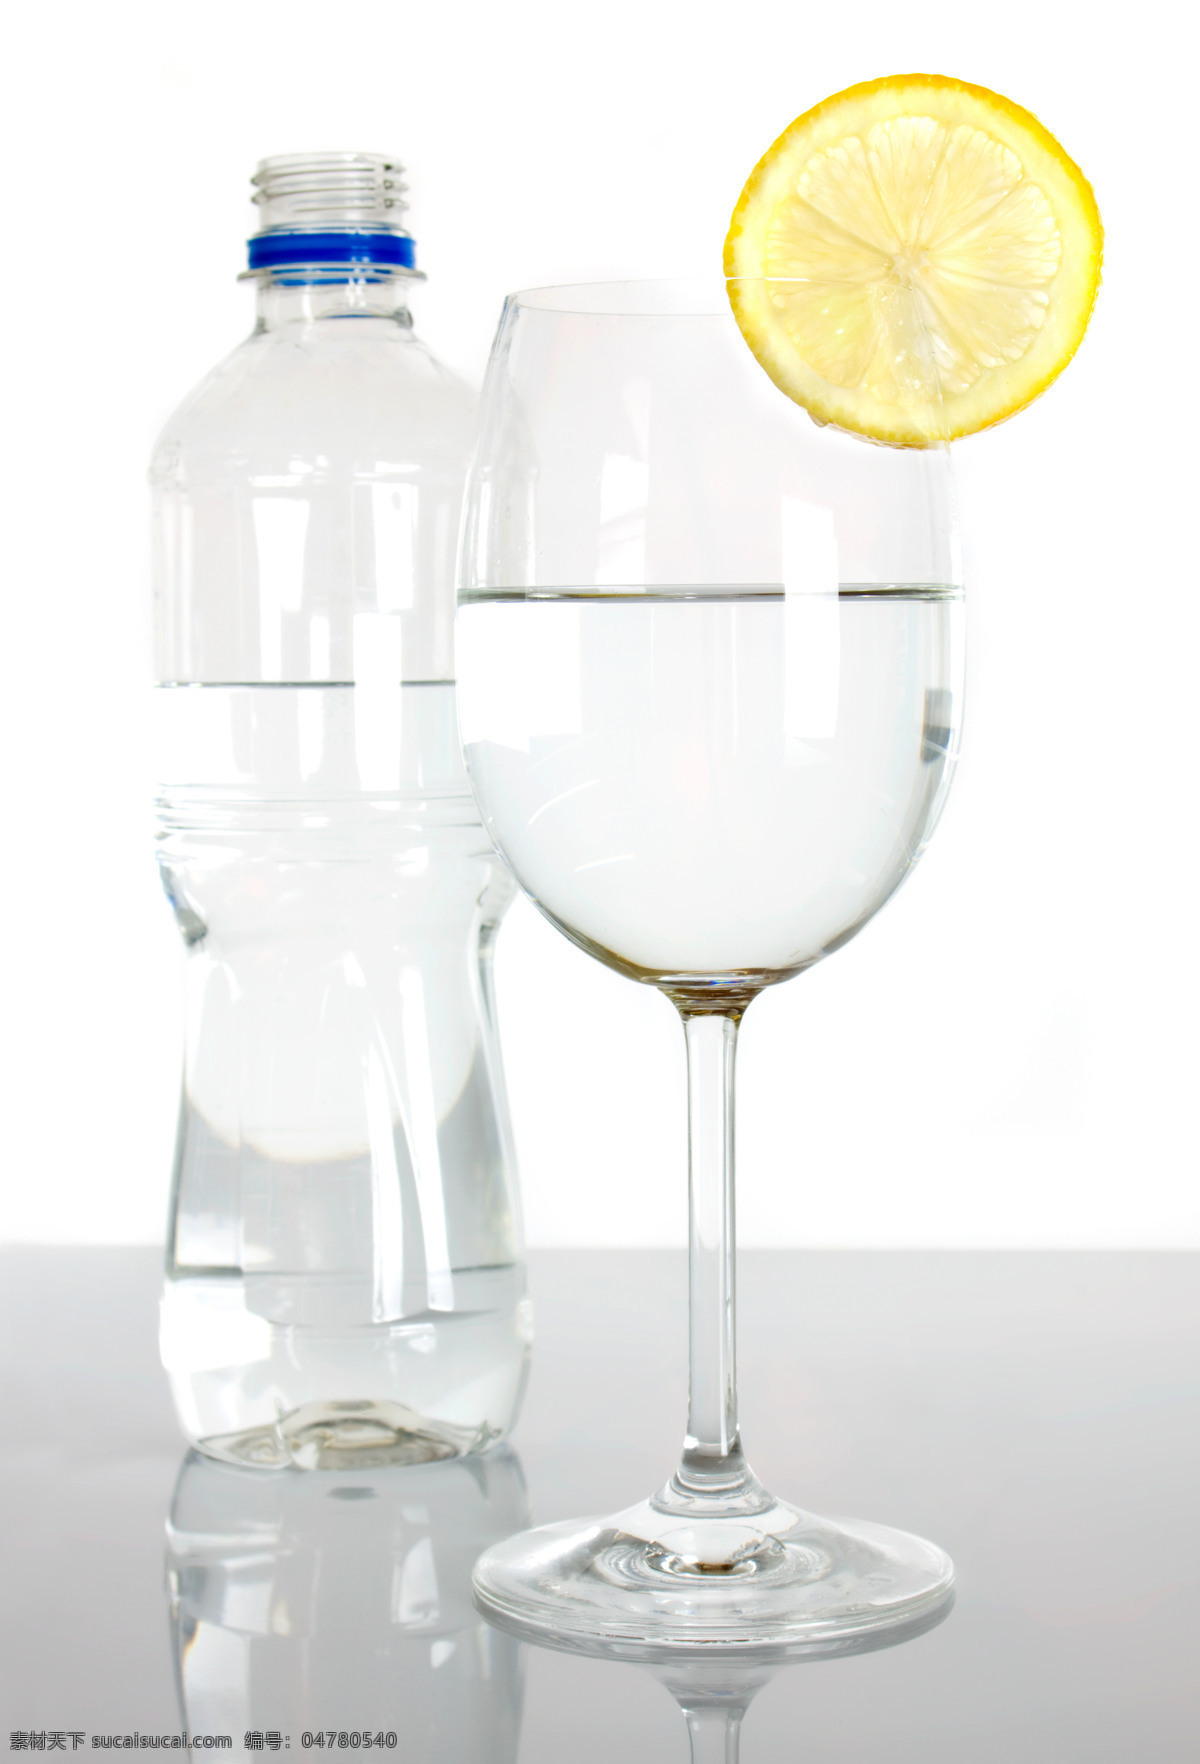 水瓶 水杯 倒水 动感水流 水滴 水 矿泉水 动感 玻璃杯 高脚杯 饮品 饮料 餐饮美食 酒类图片